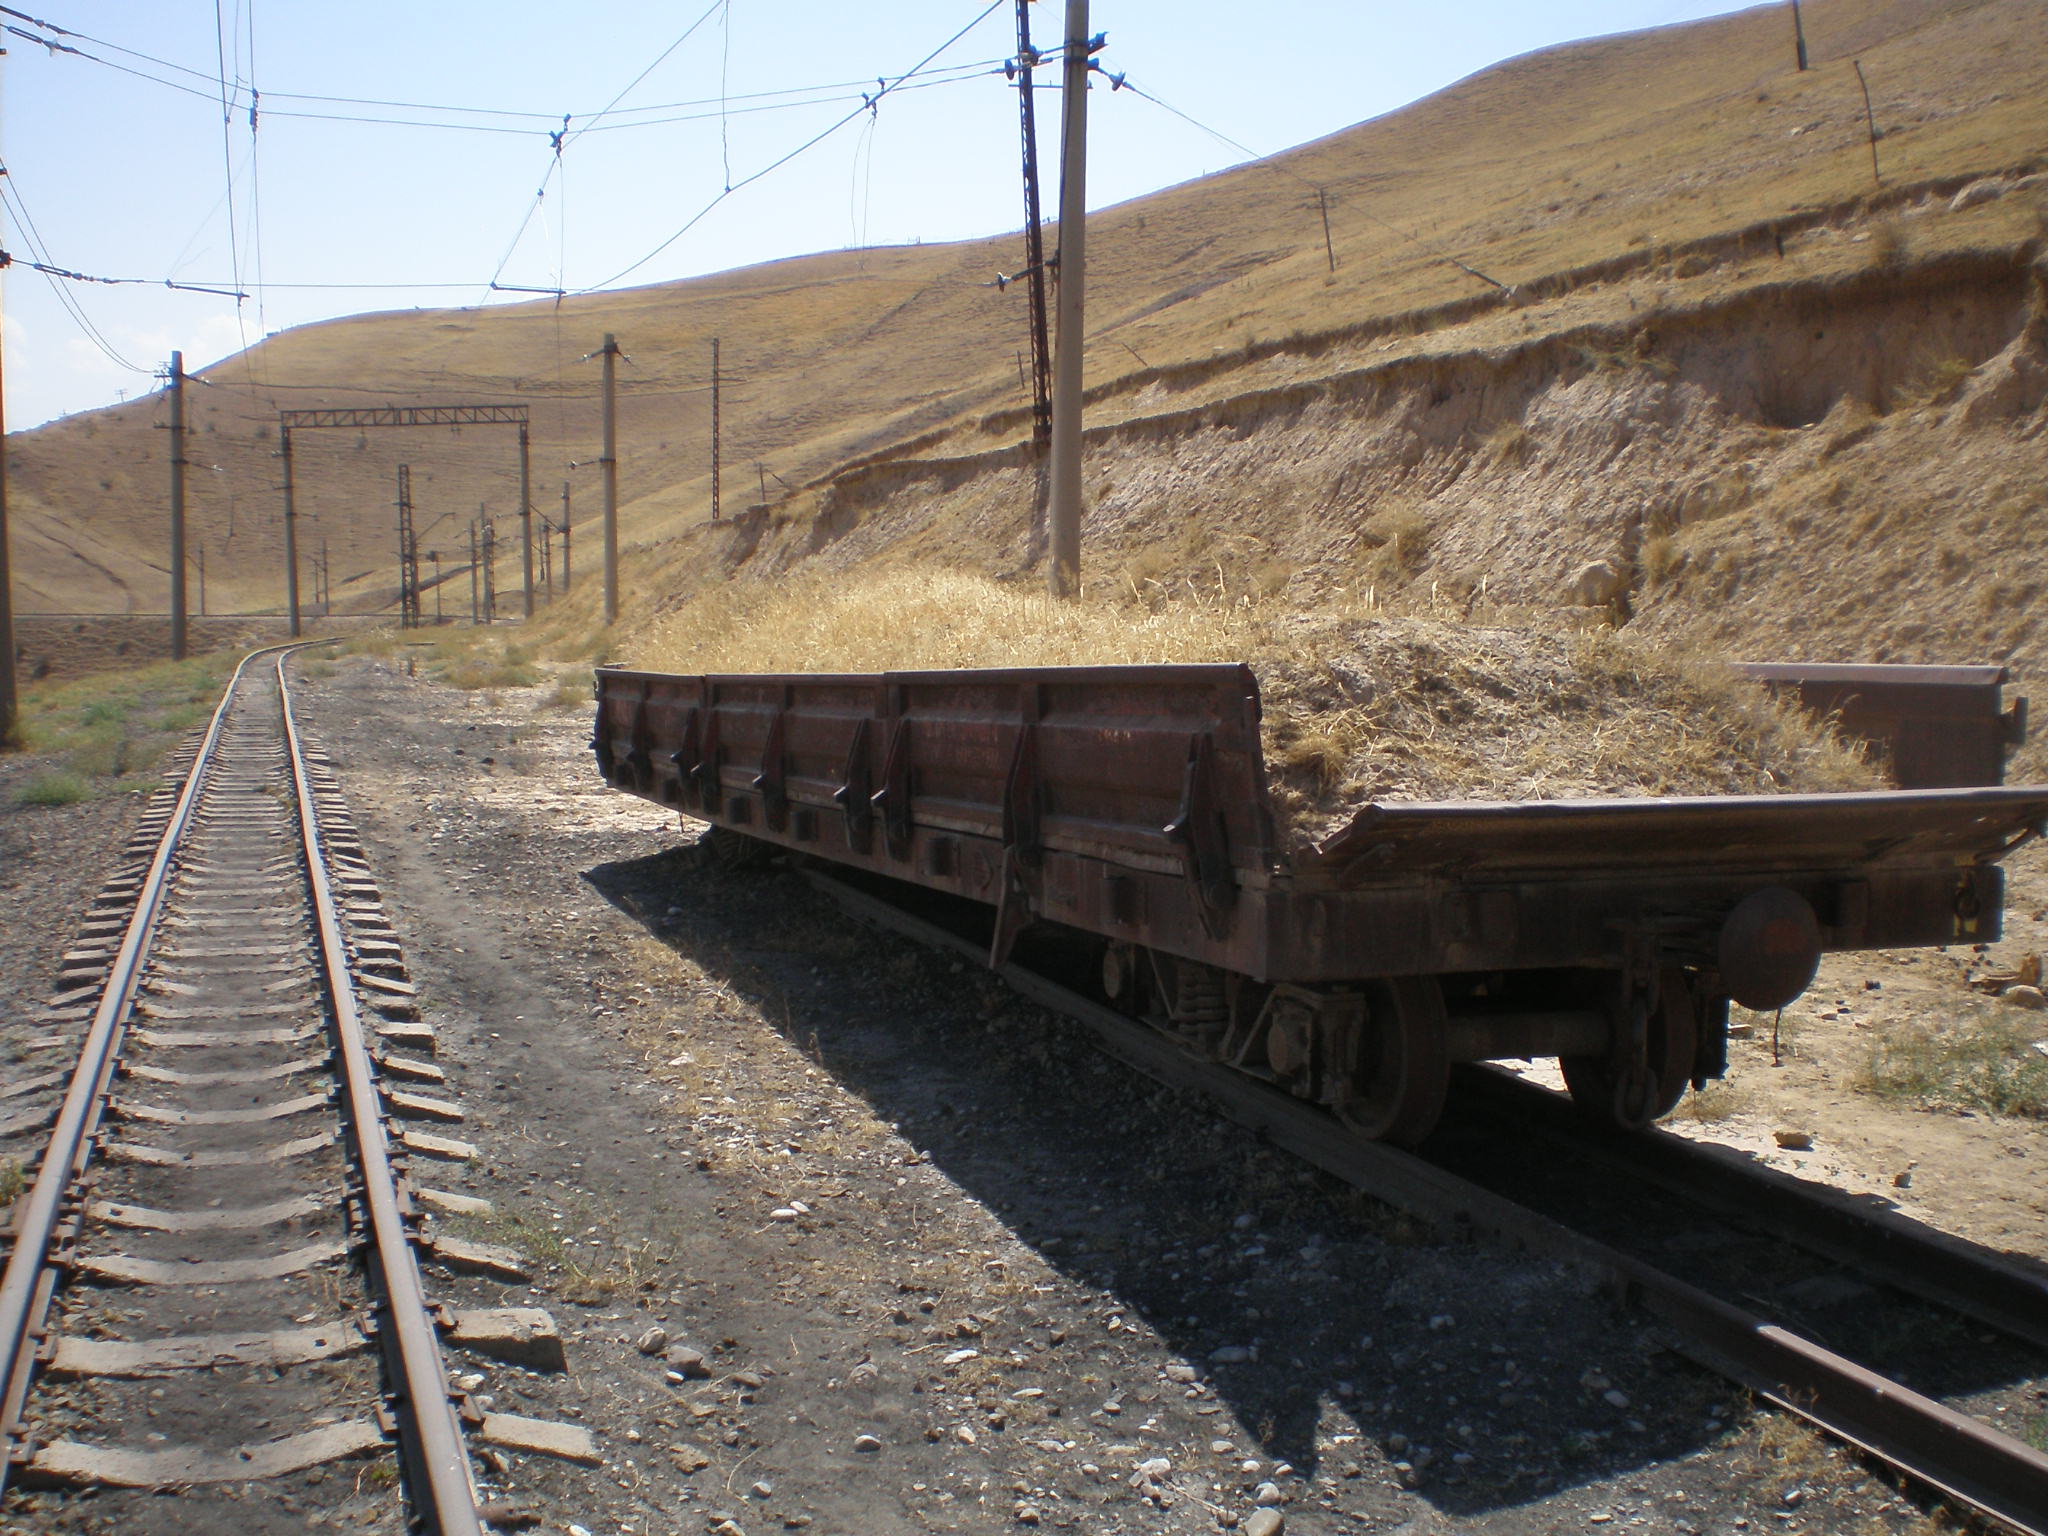 Сулюктинская узкоколейная железная дорога  —  фотографии, сделанные в 2008 году (часть 50)